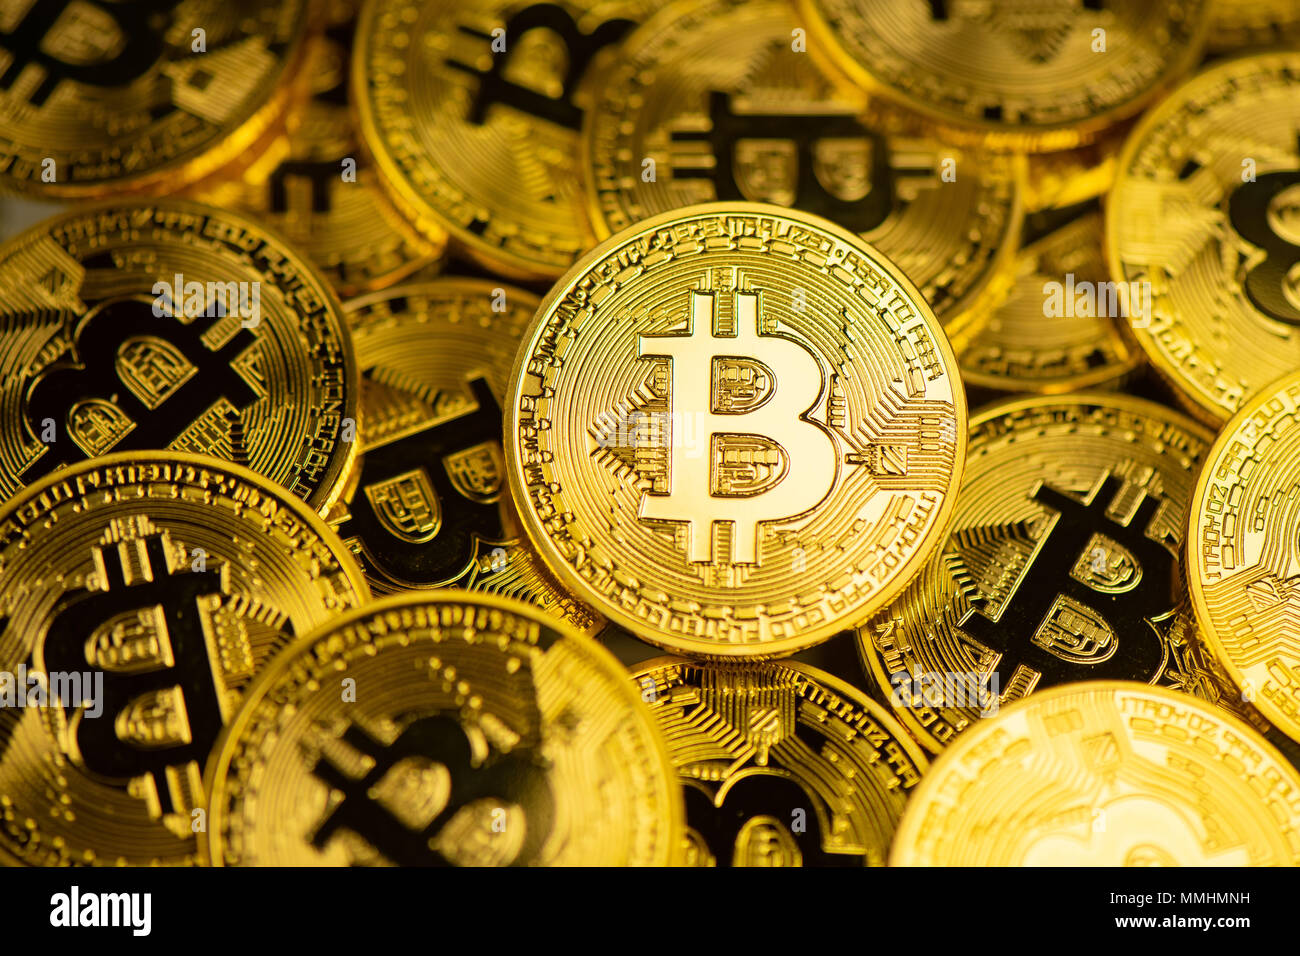 Une représentation visuelle de la digital cryptocurrency Bitcoin. Banque D'Images